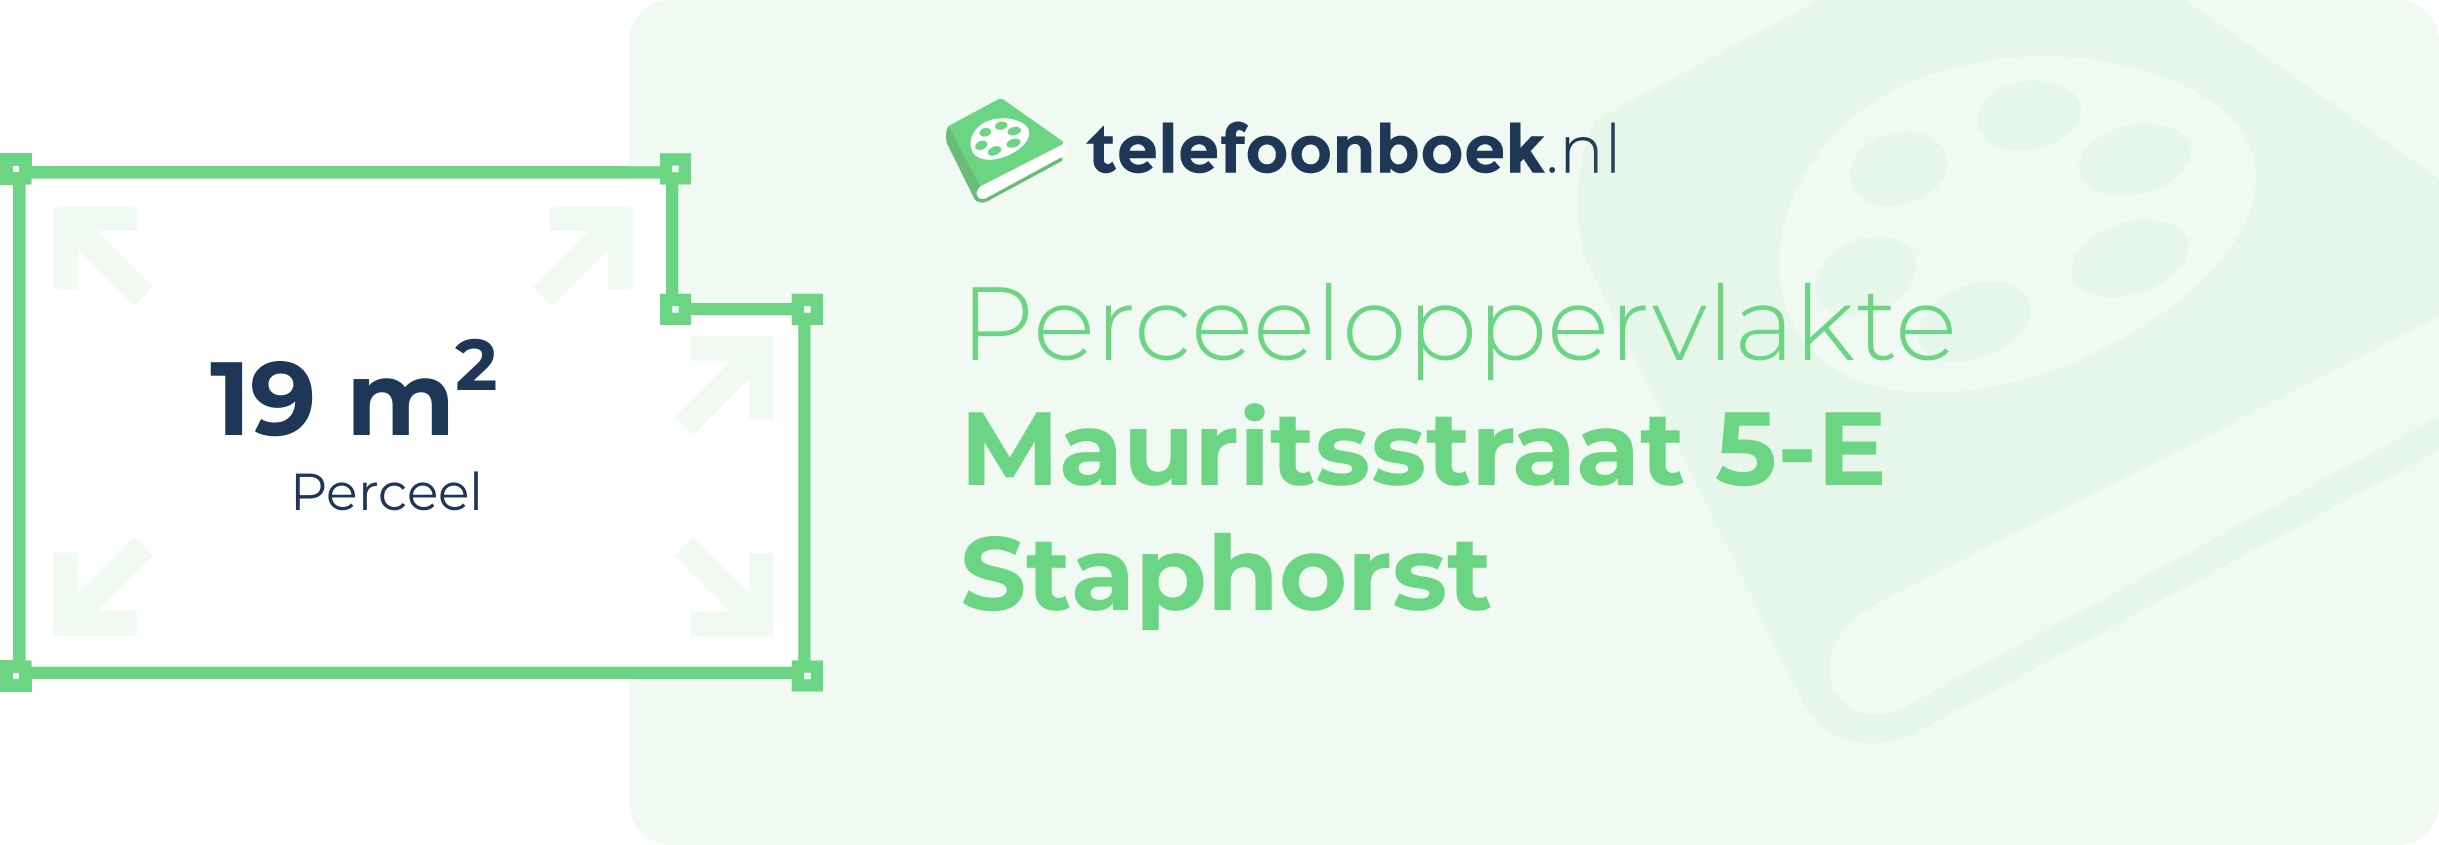 Perceeloppervlakte Mauritsstraat 5-E Staphorst